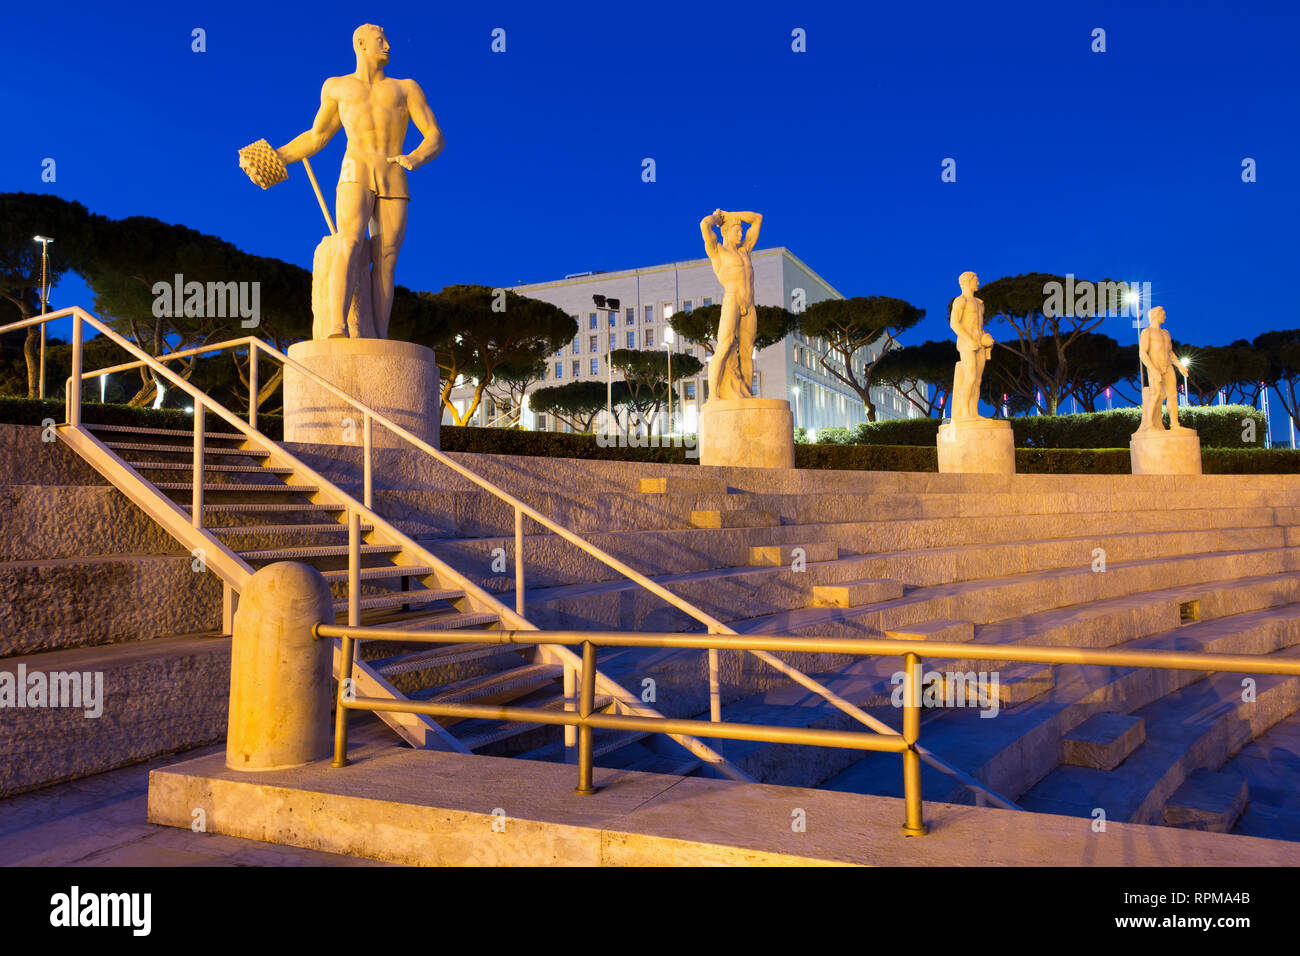 Roma - stadio dei Marmi al Foro Italico di notte. Il complesso sportivo  precedentemente noto come il foro Mussolini fu costruita in epoca fascista  Foto stock - Alamy